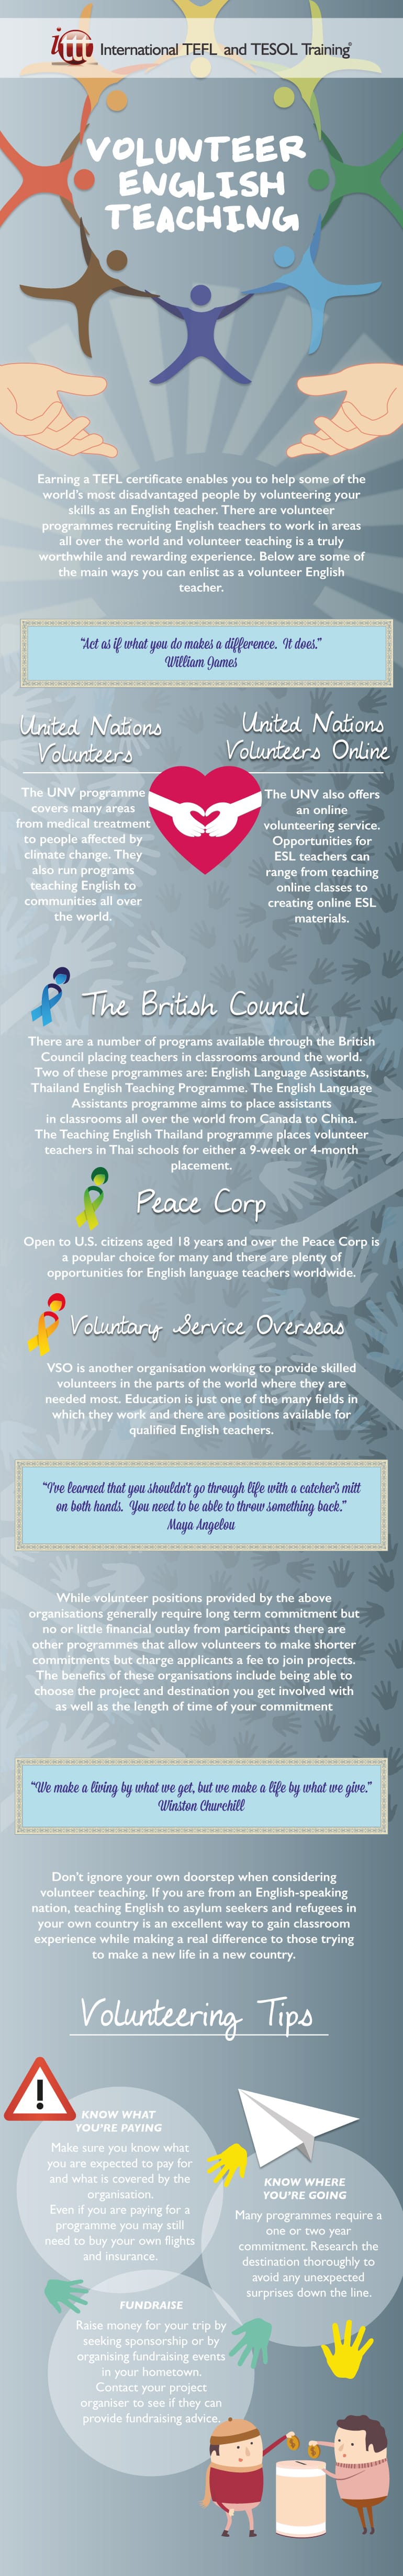 Volunteer English Teaching